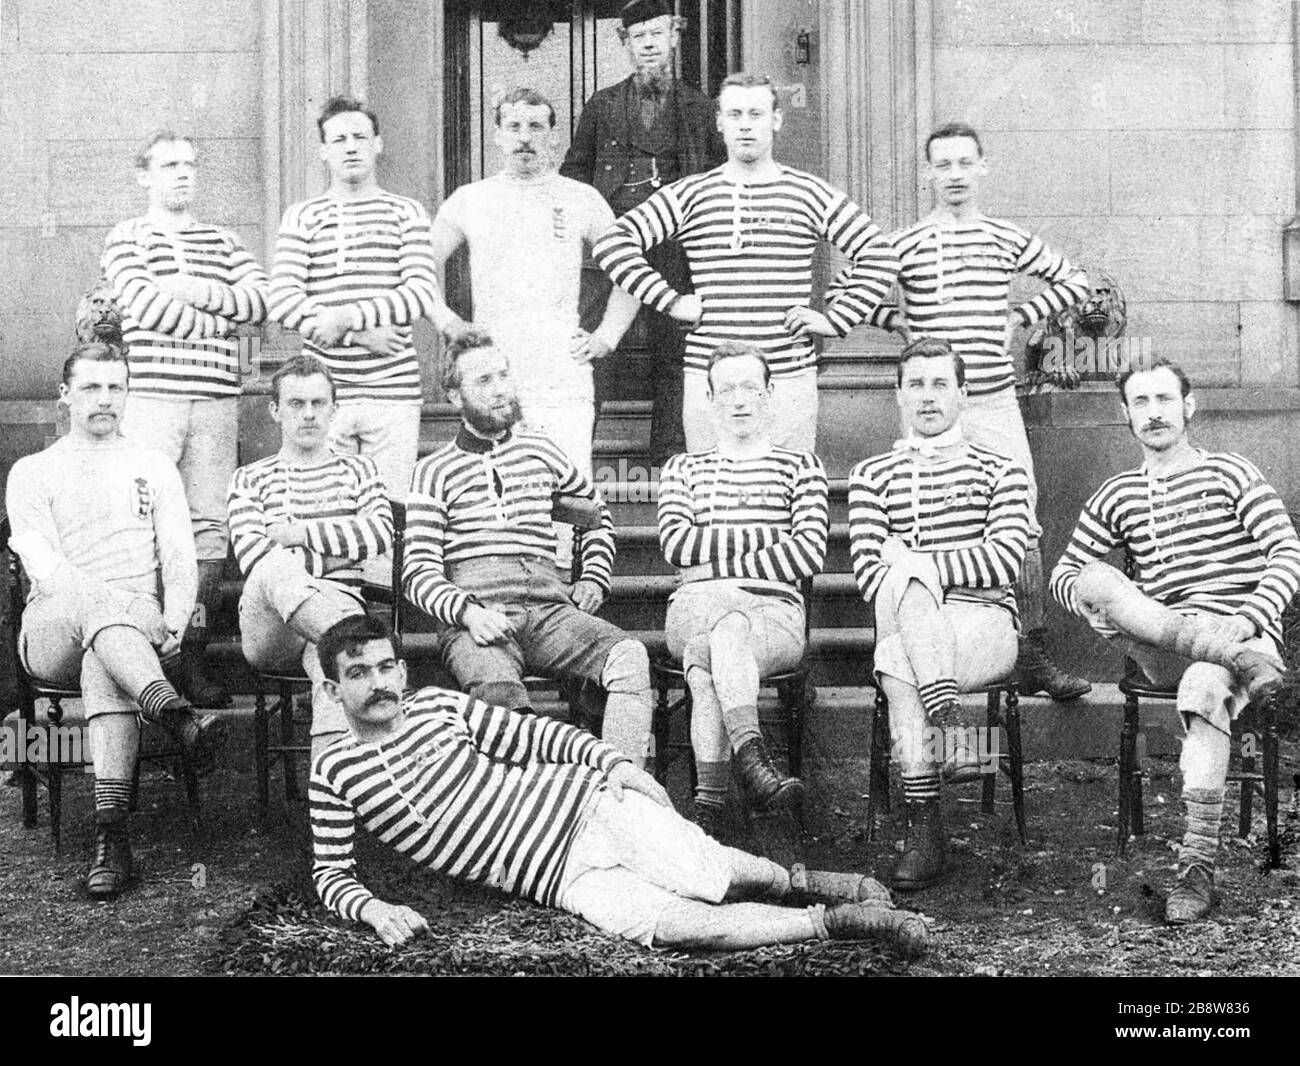 DARWEN FC 1879-1880. De Lancashire ils atteignent les demi-finales de la coupe FA en 1880-1881 saison. Le joueur professionnel Fergie Suter est en police. Banque D'Images